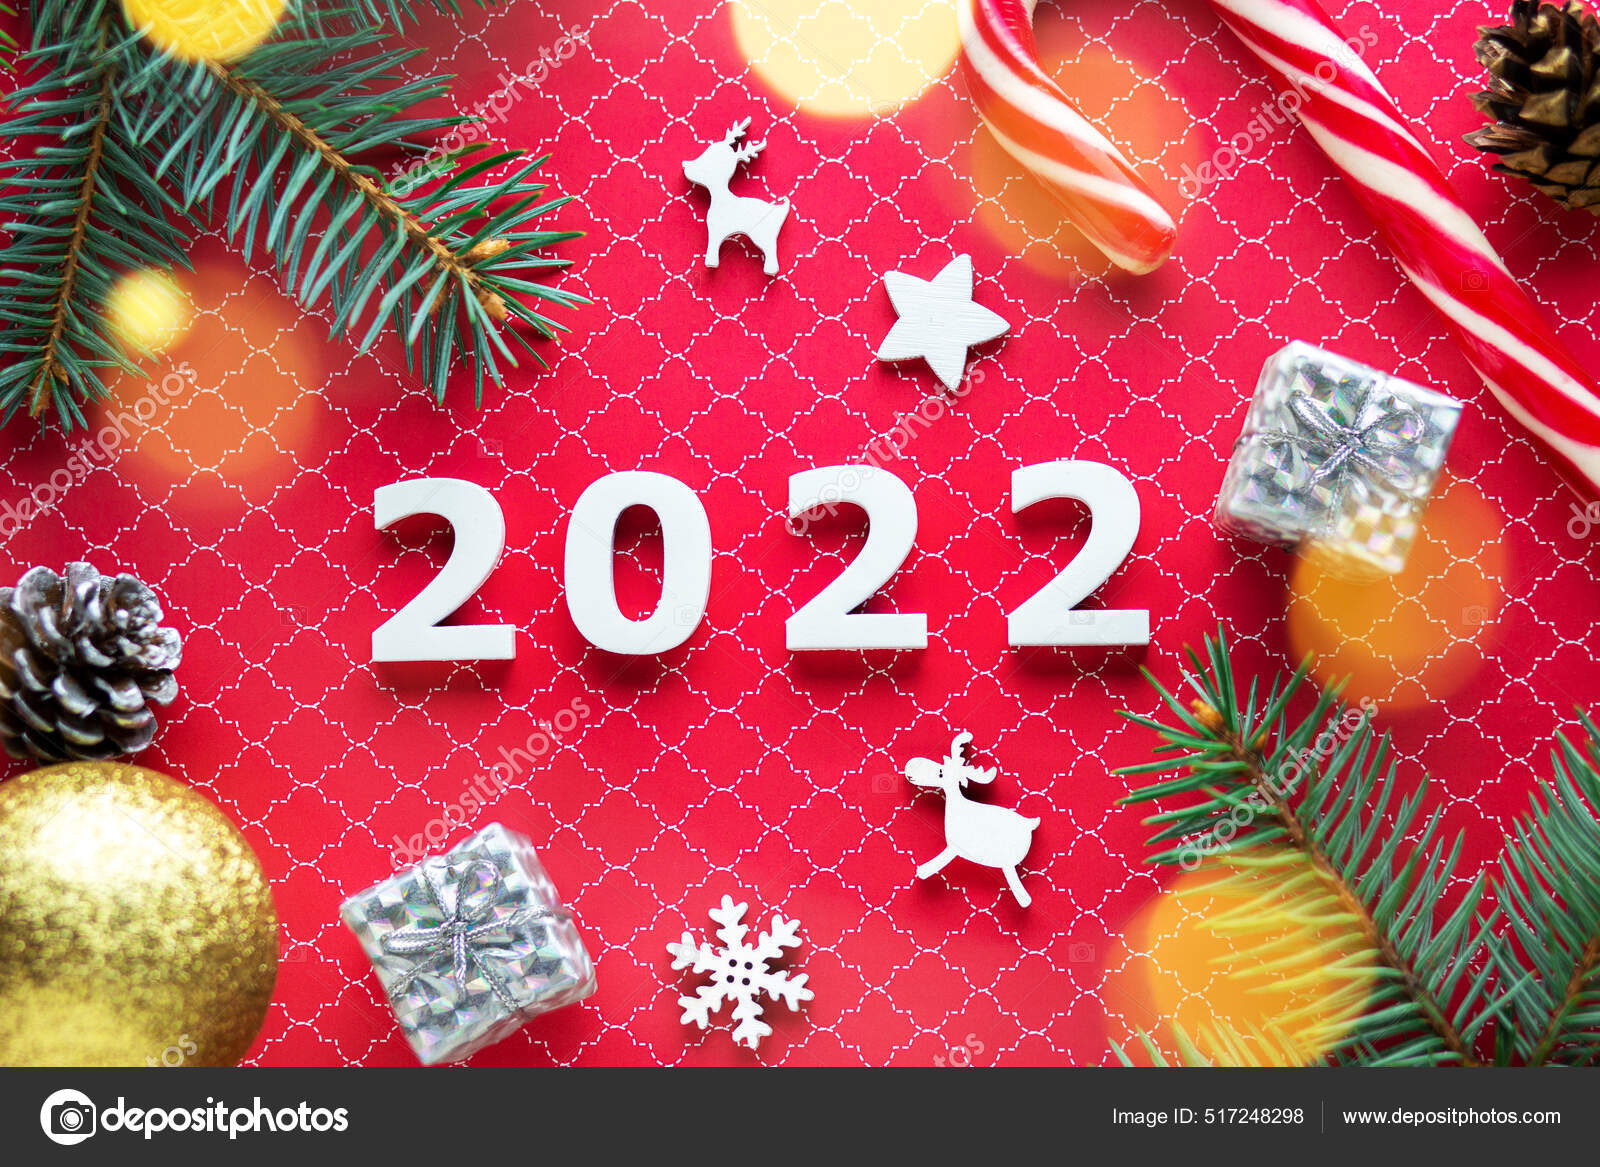 Số Giáng sinh 2022, kẹo năm mới 2022, cổ phiếu là ba từ khóa đặc biệt khiến bạn cảm thấy thích thú. Hãy truy cập ngay và tìm kiếm những hình ảnh đẹp nhất để tận hưởng không khí Giáng sinh tươi trẻ và năm mới đầy cảm hứng. Sự đa dạng và đầy màu sắc của những hình ảnh này sẽ khiến bạn giành cho mình những khoảnh khắc đáng nhớ nhất.